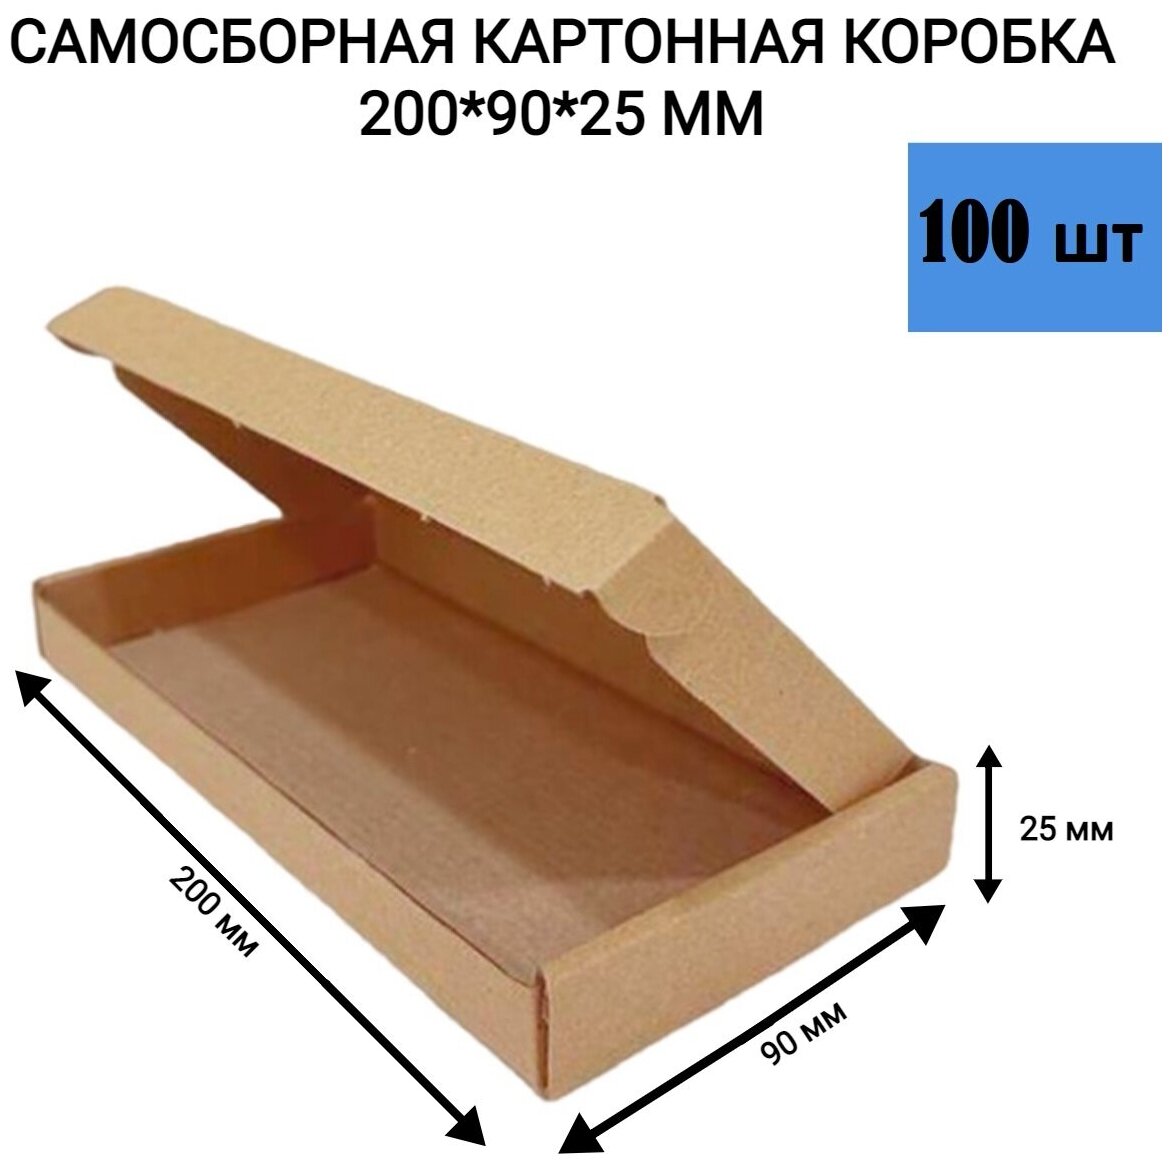 Самосборная картонная коробка 200*90*25 мм. 100 шт